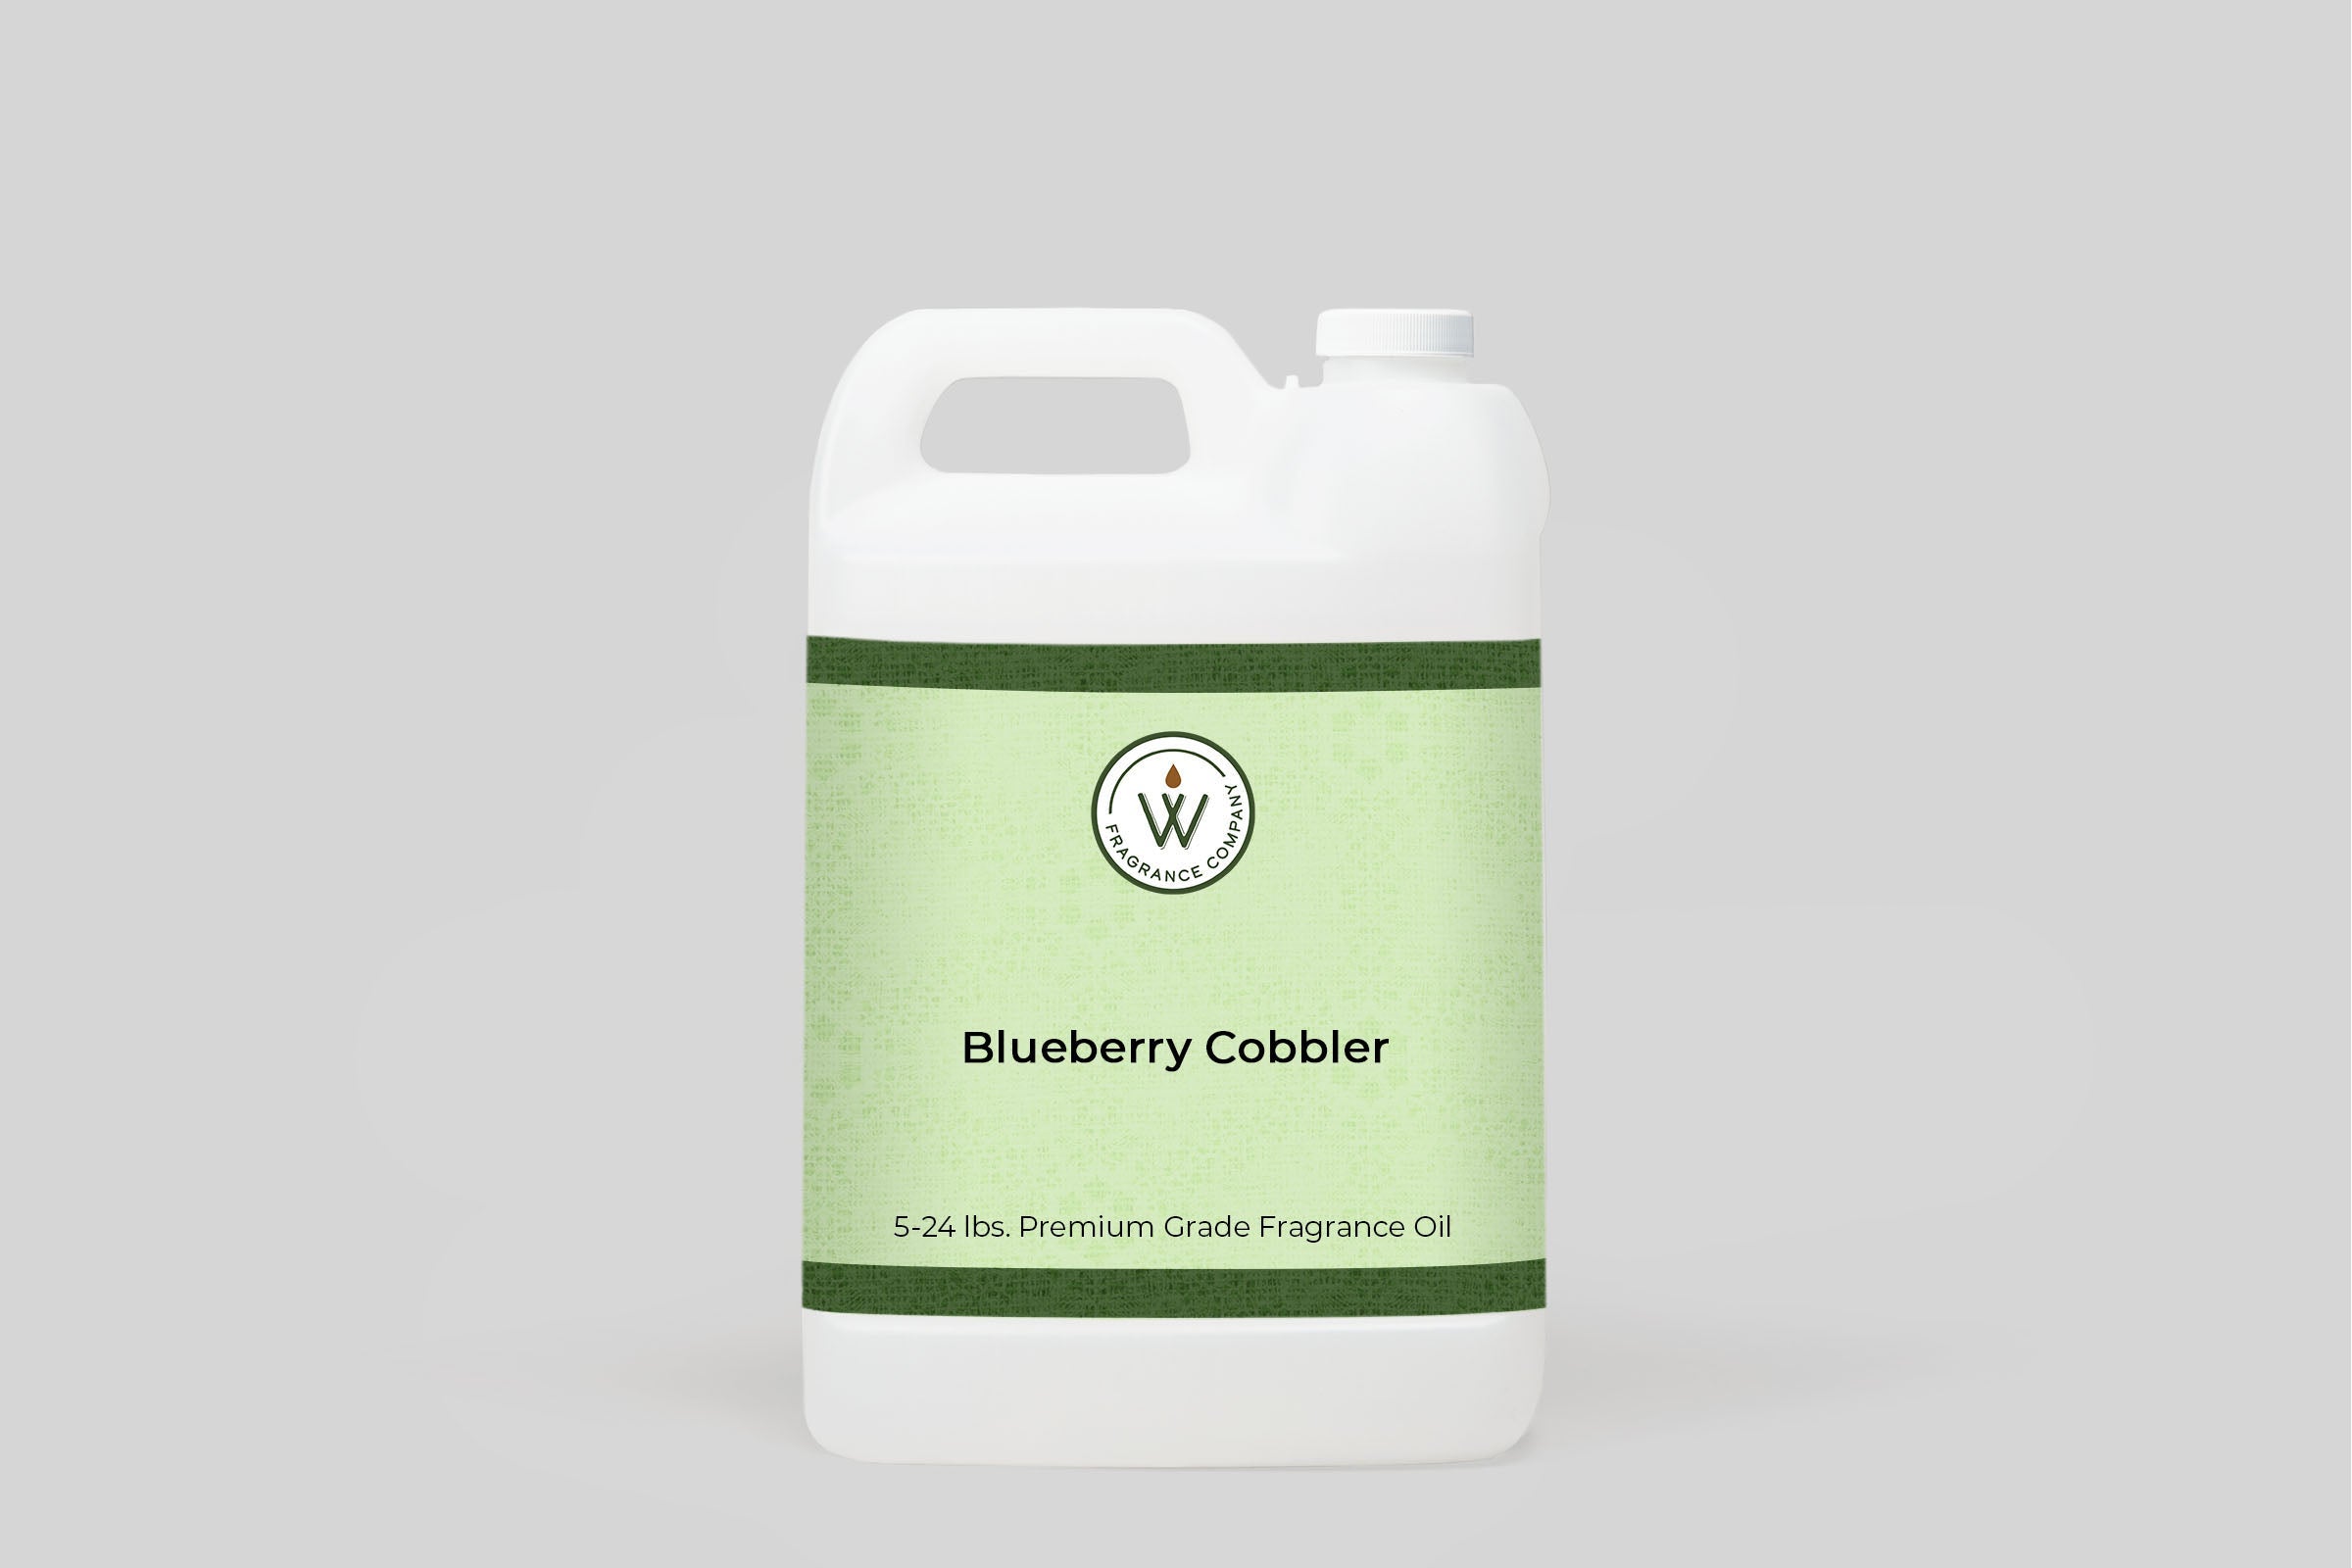 Blueberry Cobbler Fragrance Oil